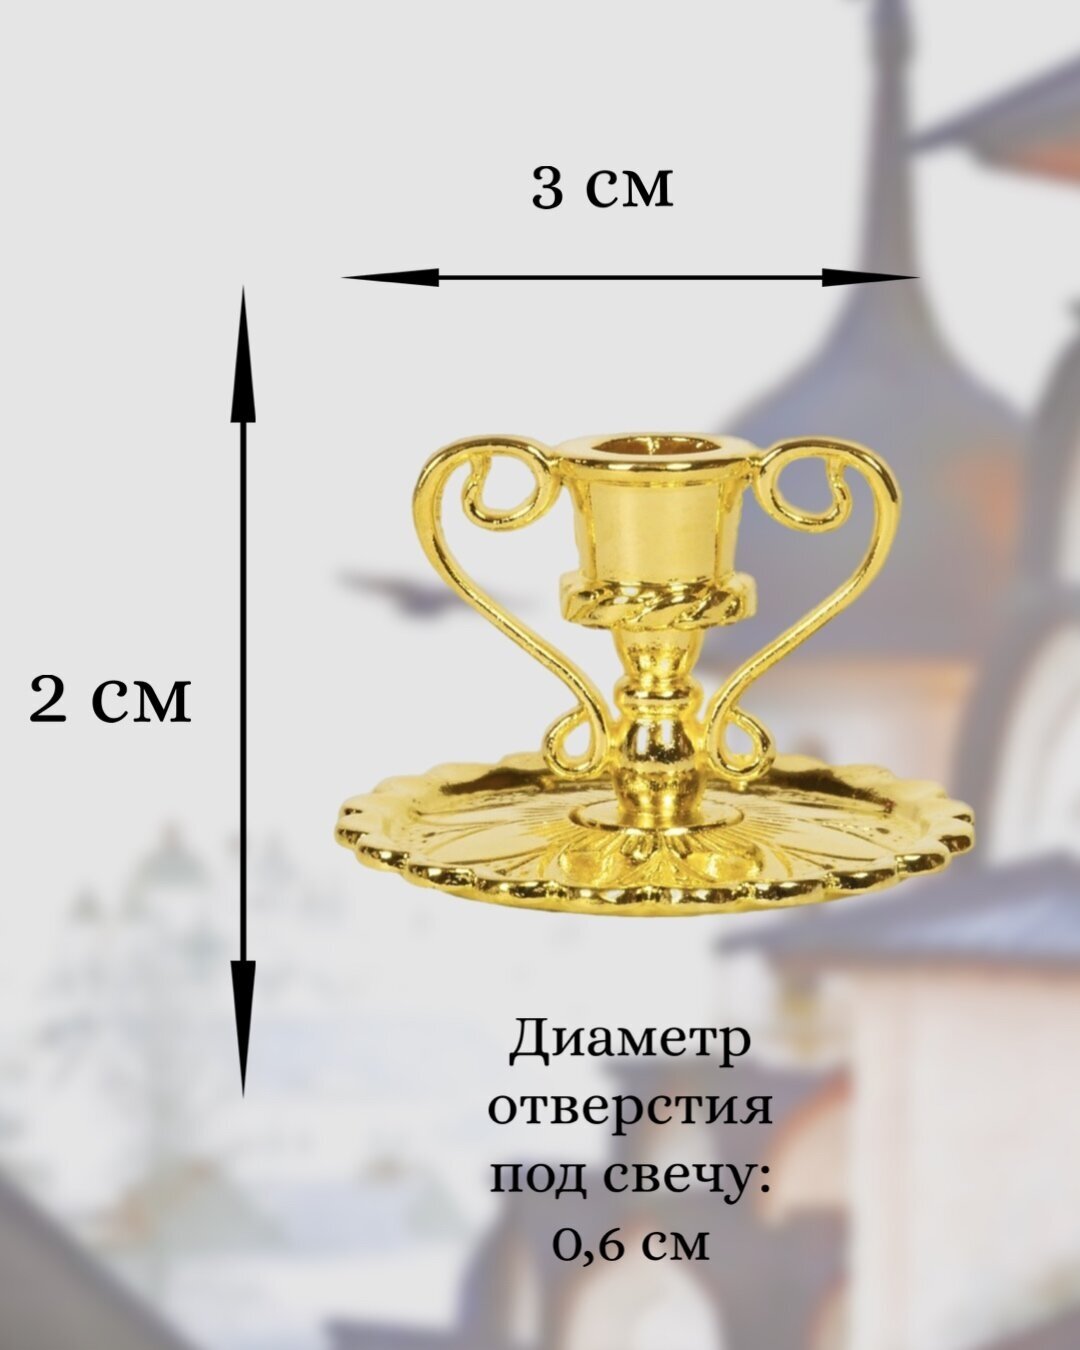 Подсвечник церковный металлический золото с ручками, подсвечник для свечи религиозный, диаметр - 6 мм под свечу, высота - 2.5 см, ширина - 3 см - фотография № 2